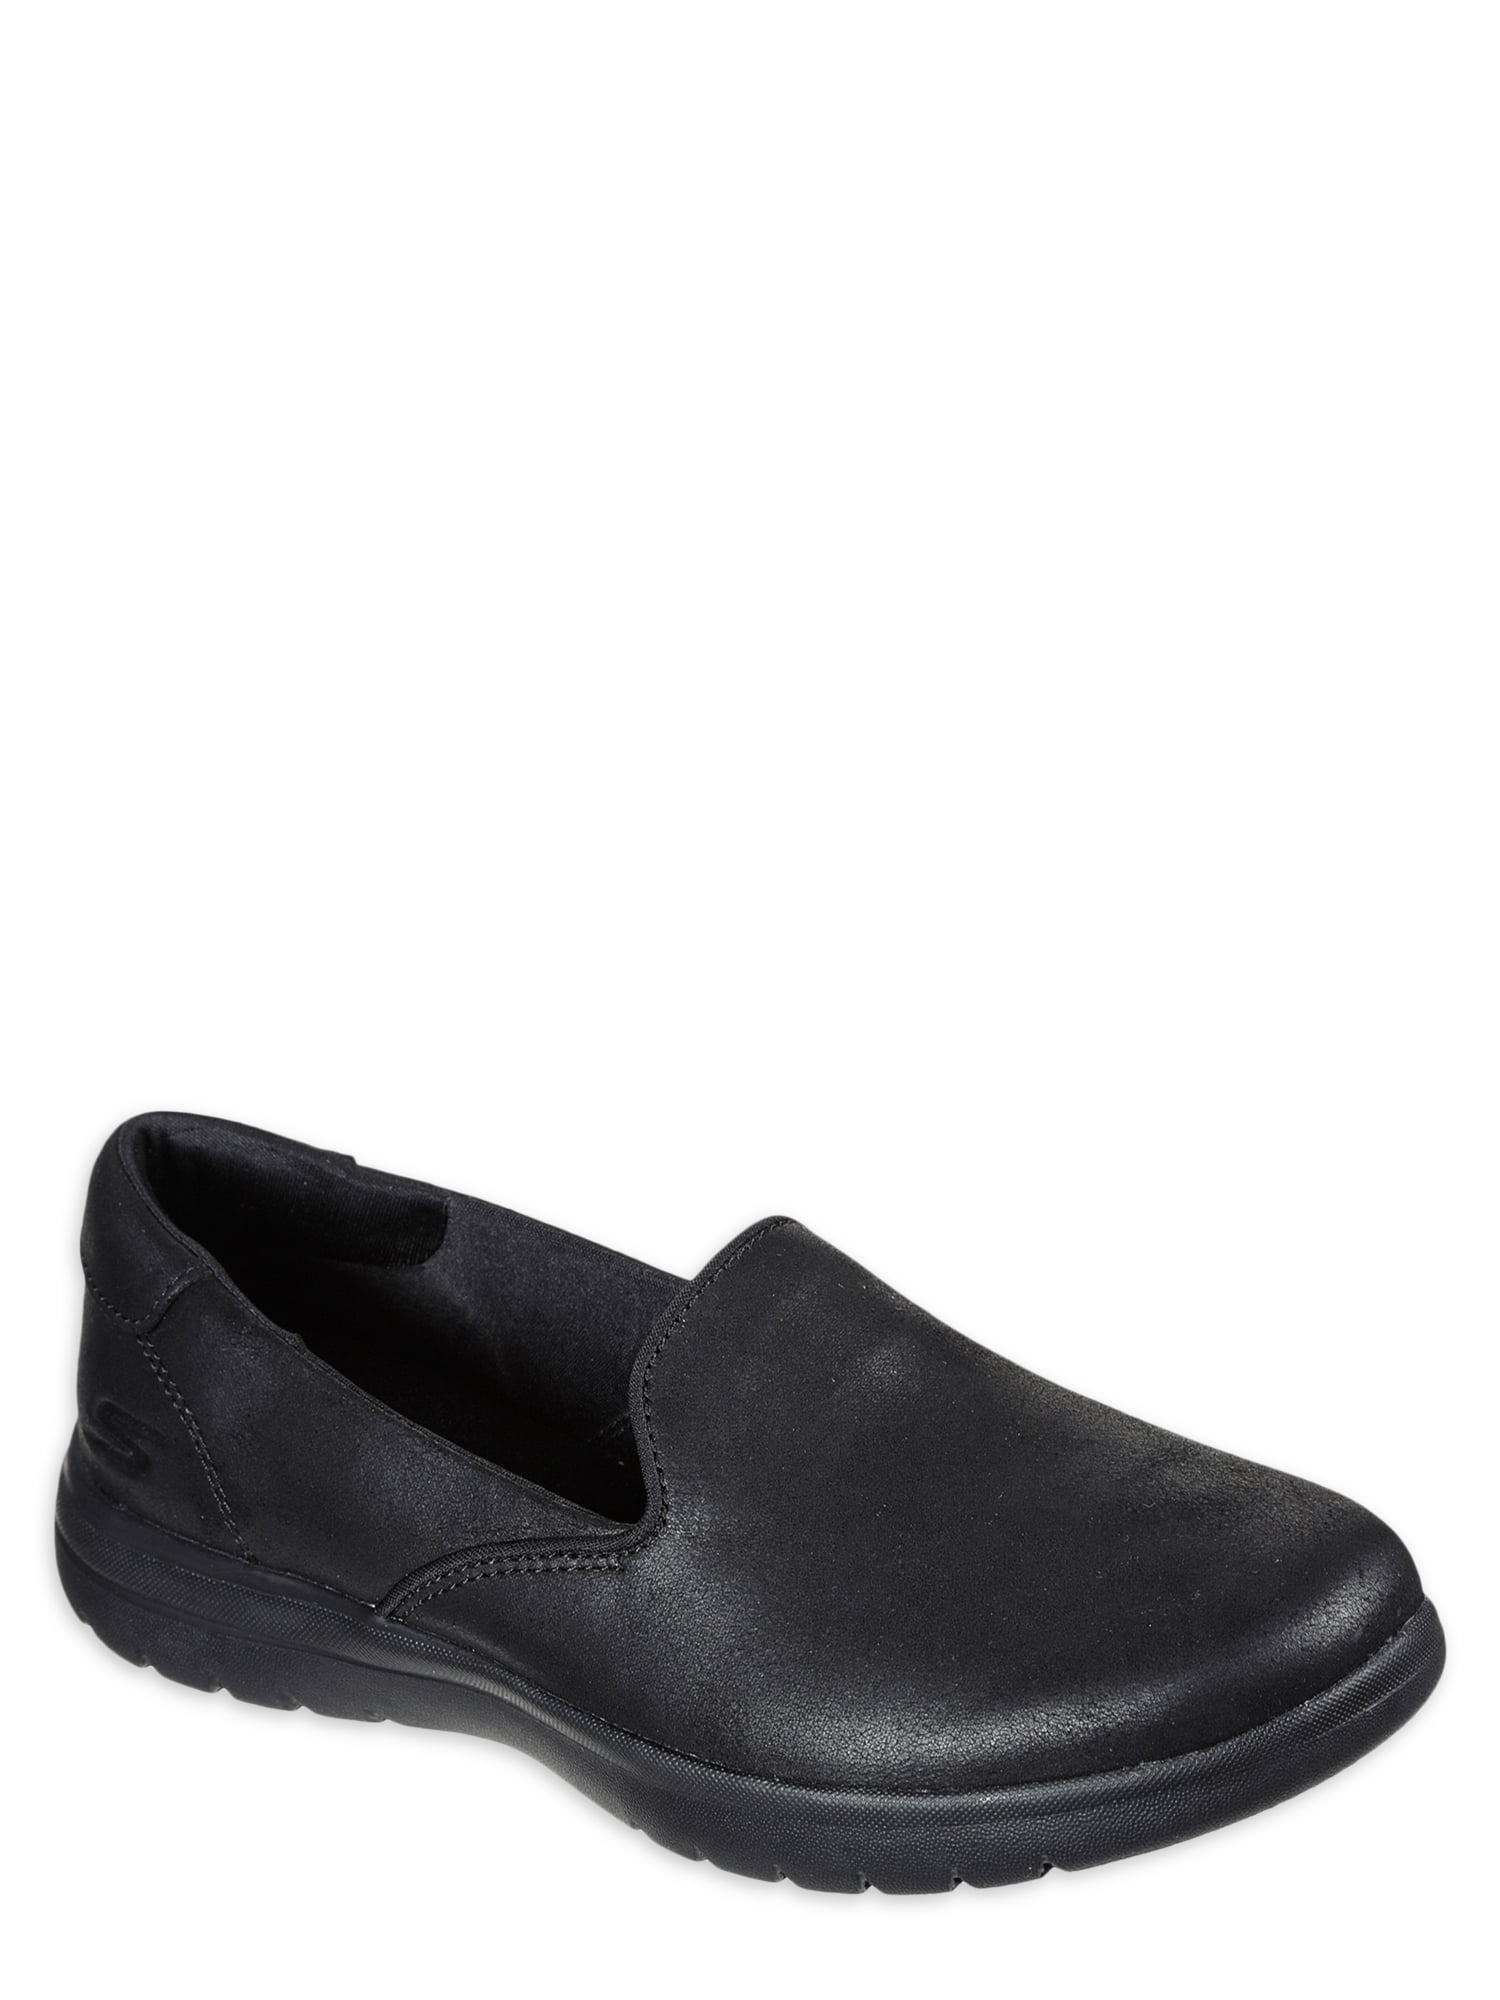 Skechers Women's GOwalk Lite Slip-on Comfort Walking Shoe (Wide Widths Available) - Walmart.com